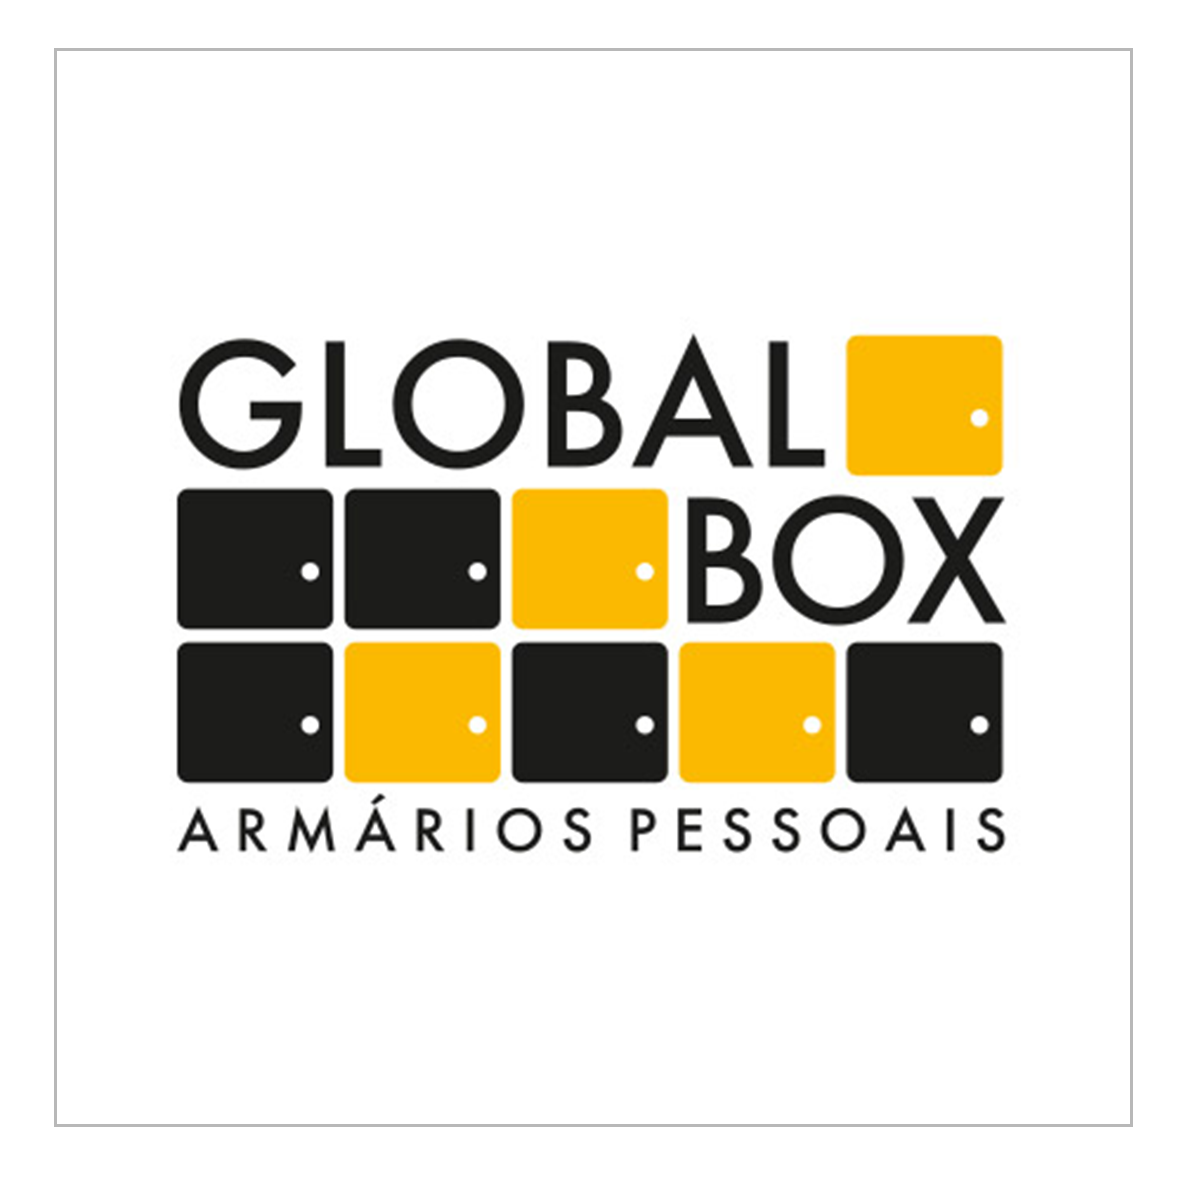 GLOBAL BOX